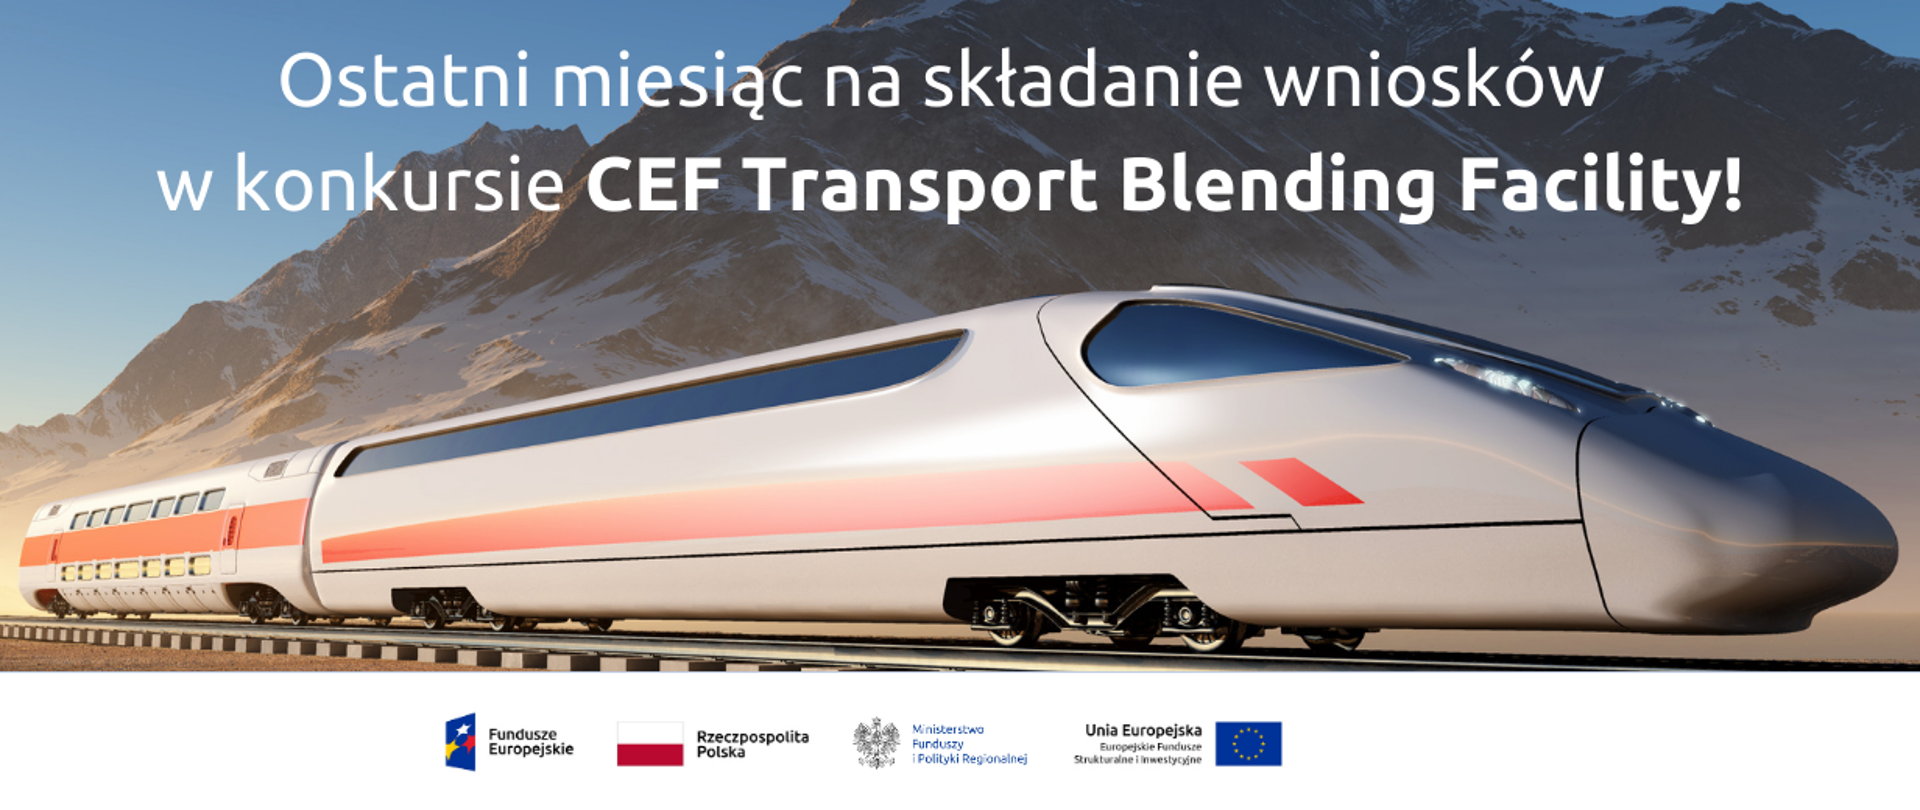 Zdjęcie nowoczesnego pociągu na tle gór. Na górze napis: Ostatni miesiąc na składanie wniosków w konkursie CEF Transport Blending Facility! Na dole logo Funduszy Europejskich, Ministerstwa Funduszy i Polityki Regionalnej, Unii Europejskiej oraz flaga RP.